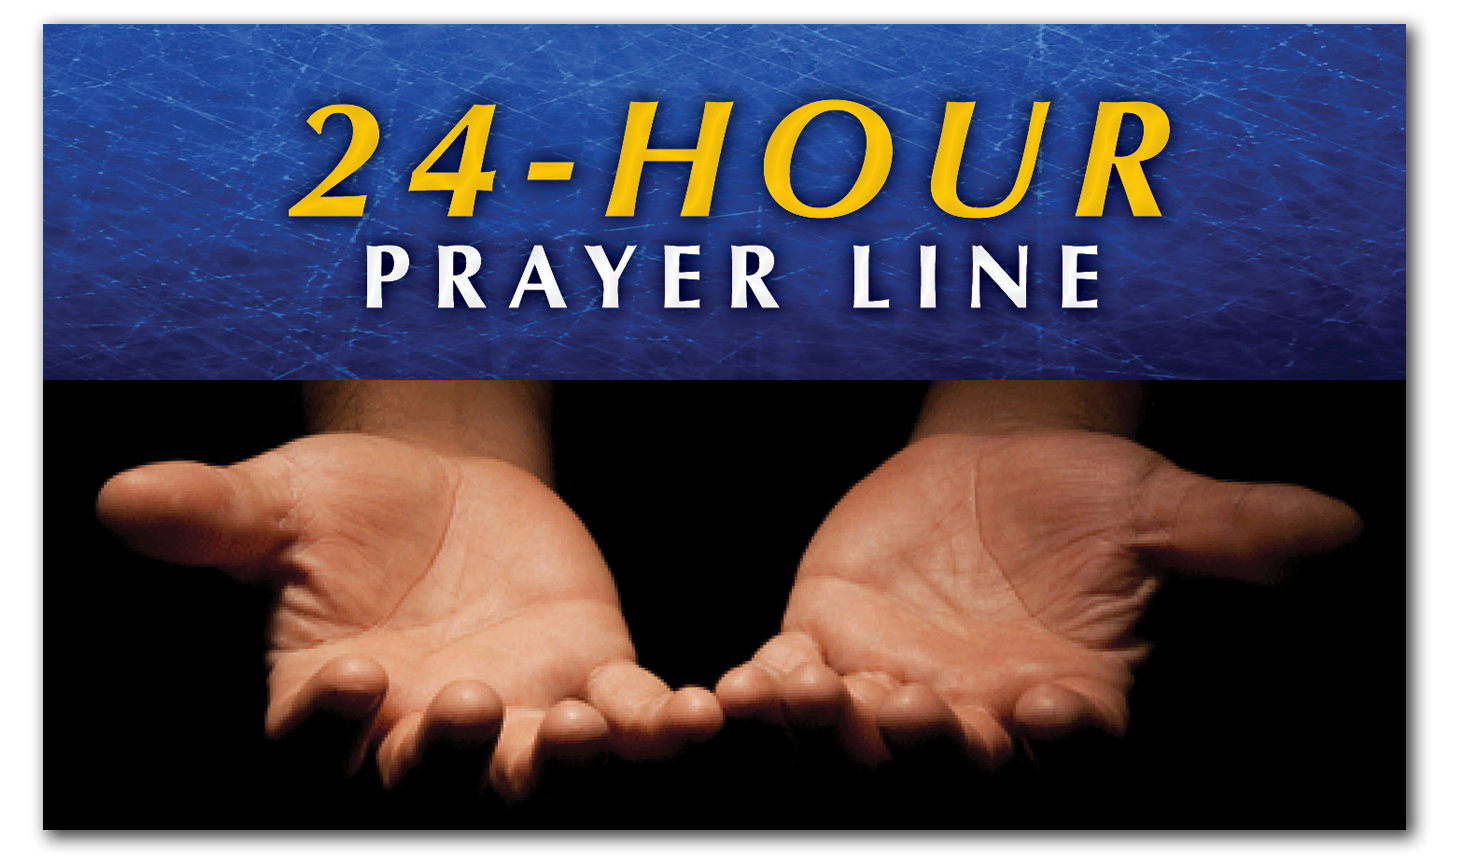 Prayer 24 hour line